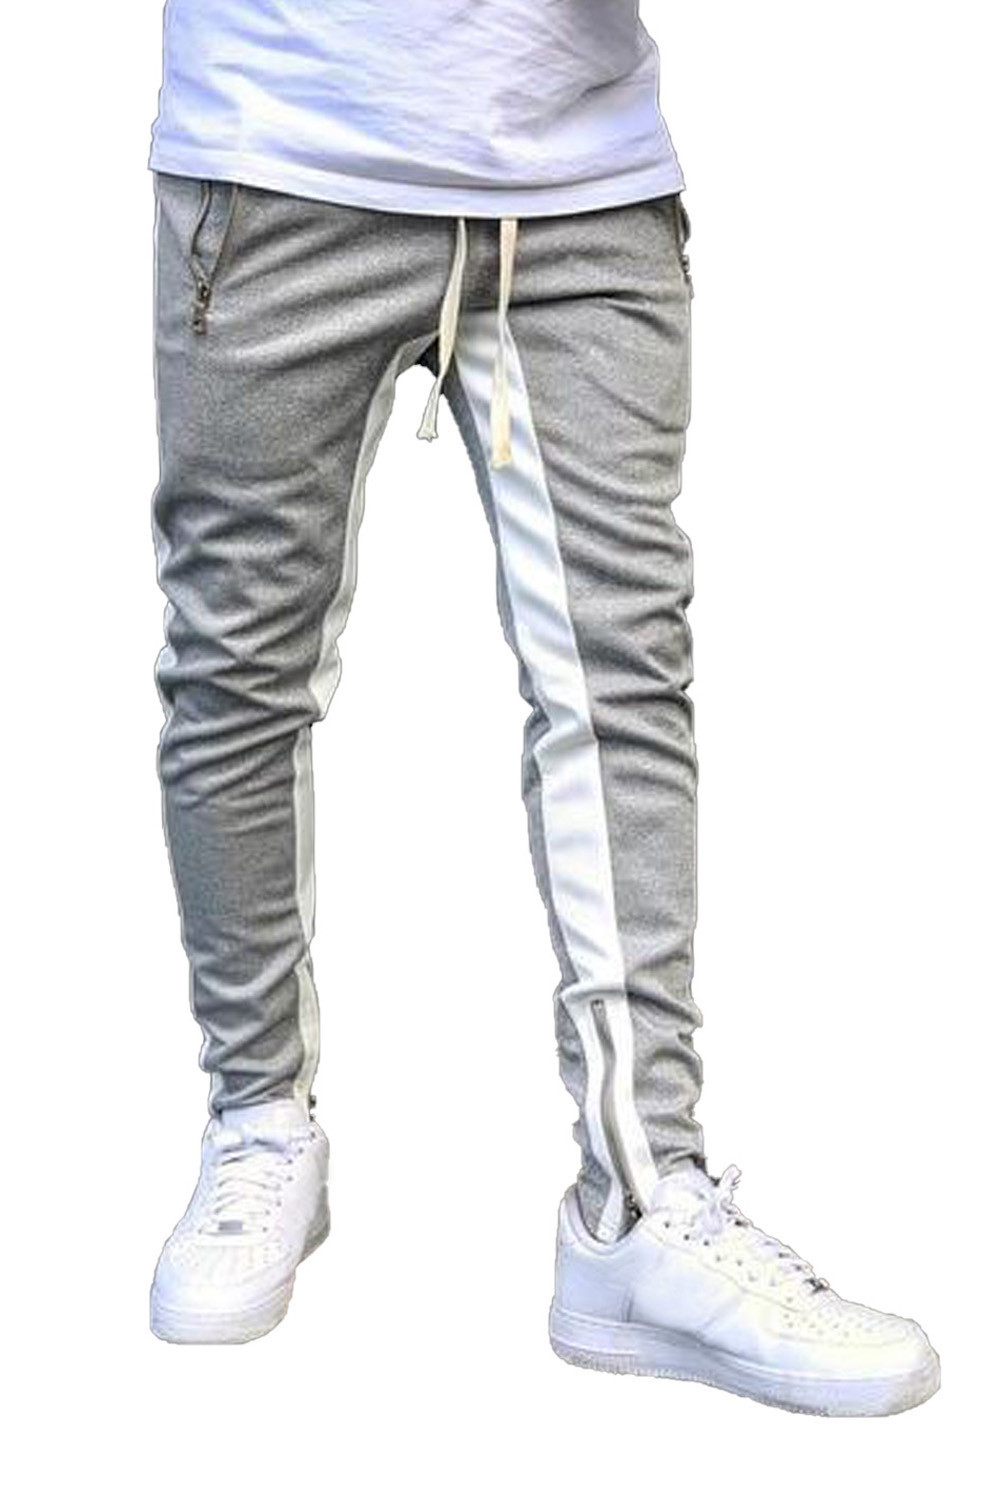 灰色时尚撞色拼接拉链设计口袋男士运动卫裤 MC77055